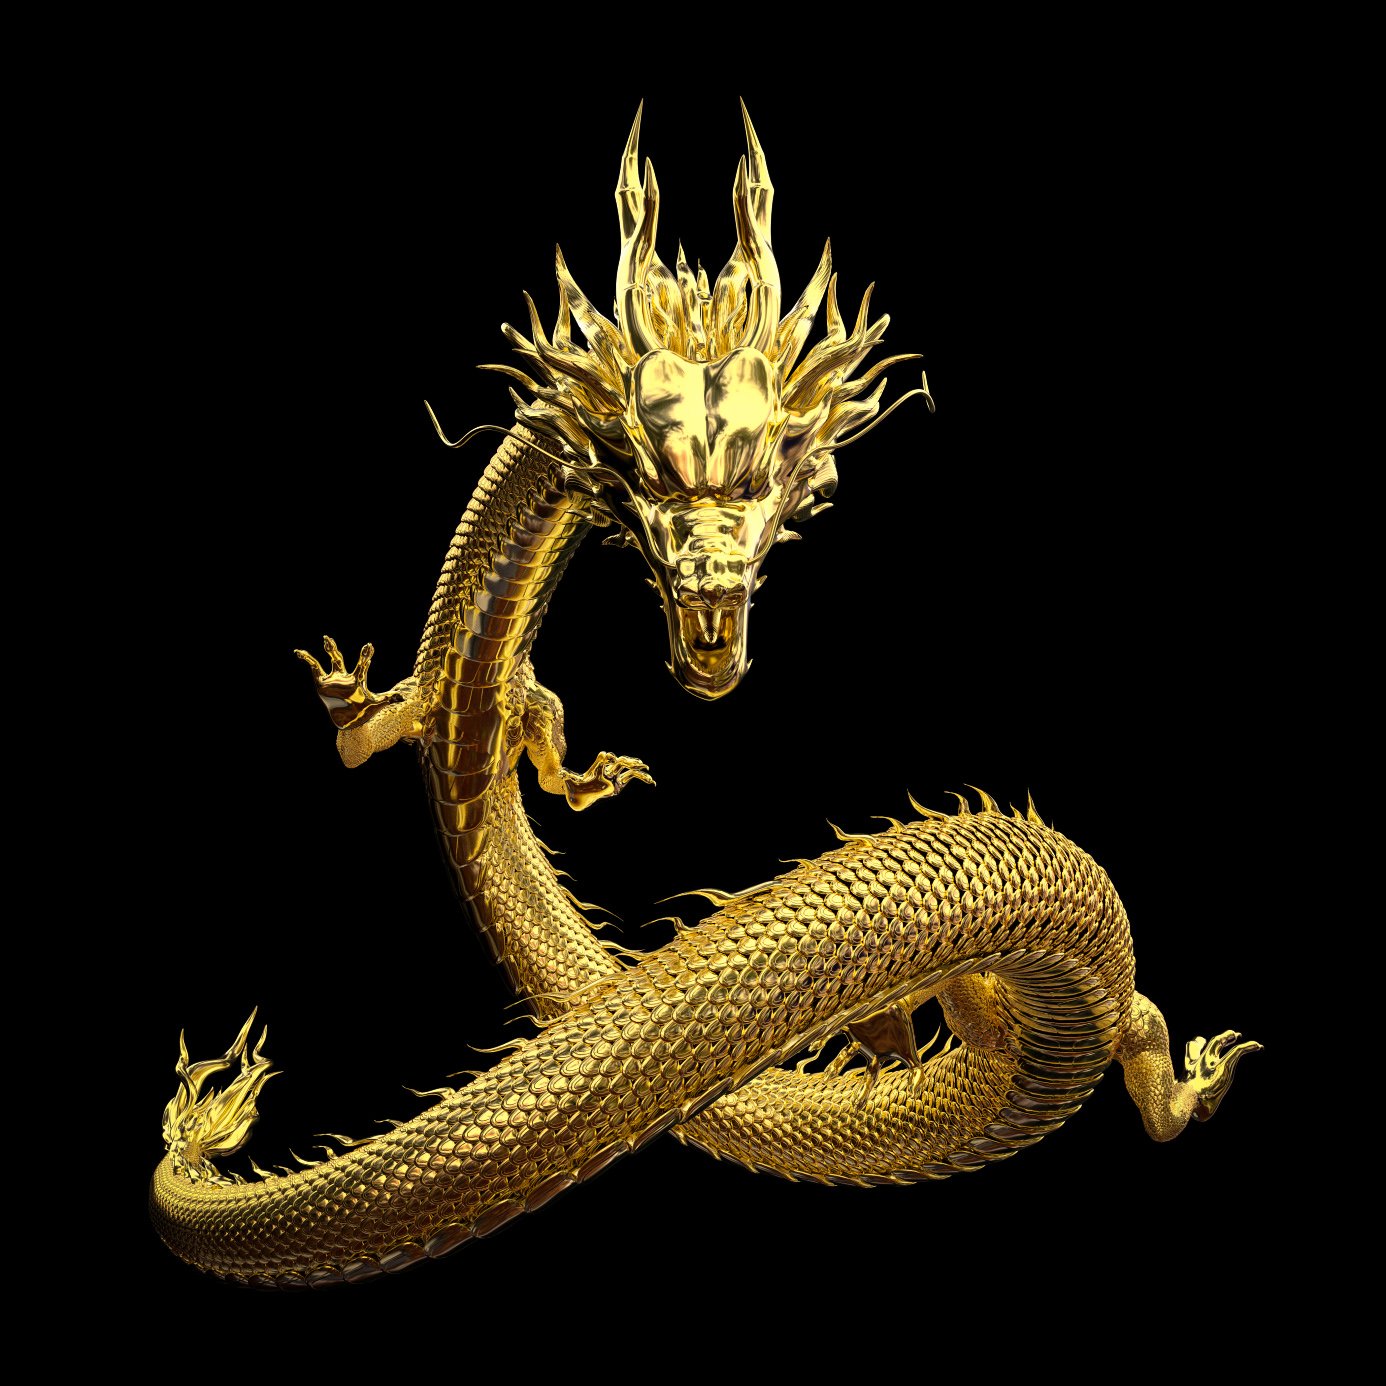 De Chinese draak, ook wel long genoemd, is een legendarisch wezen in de Chinese mythologie.